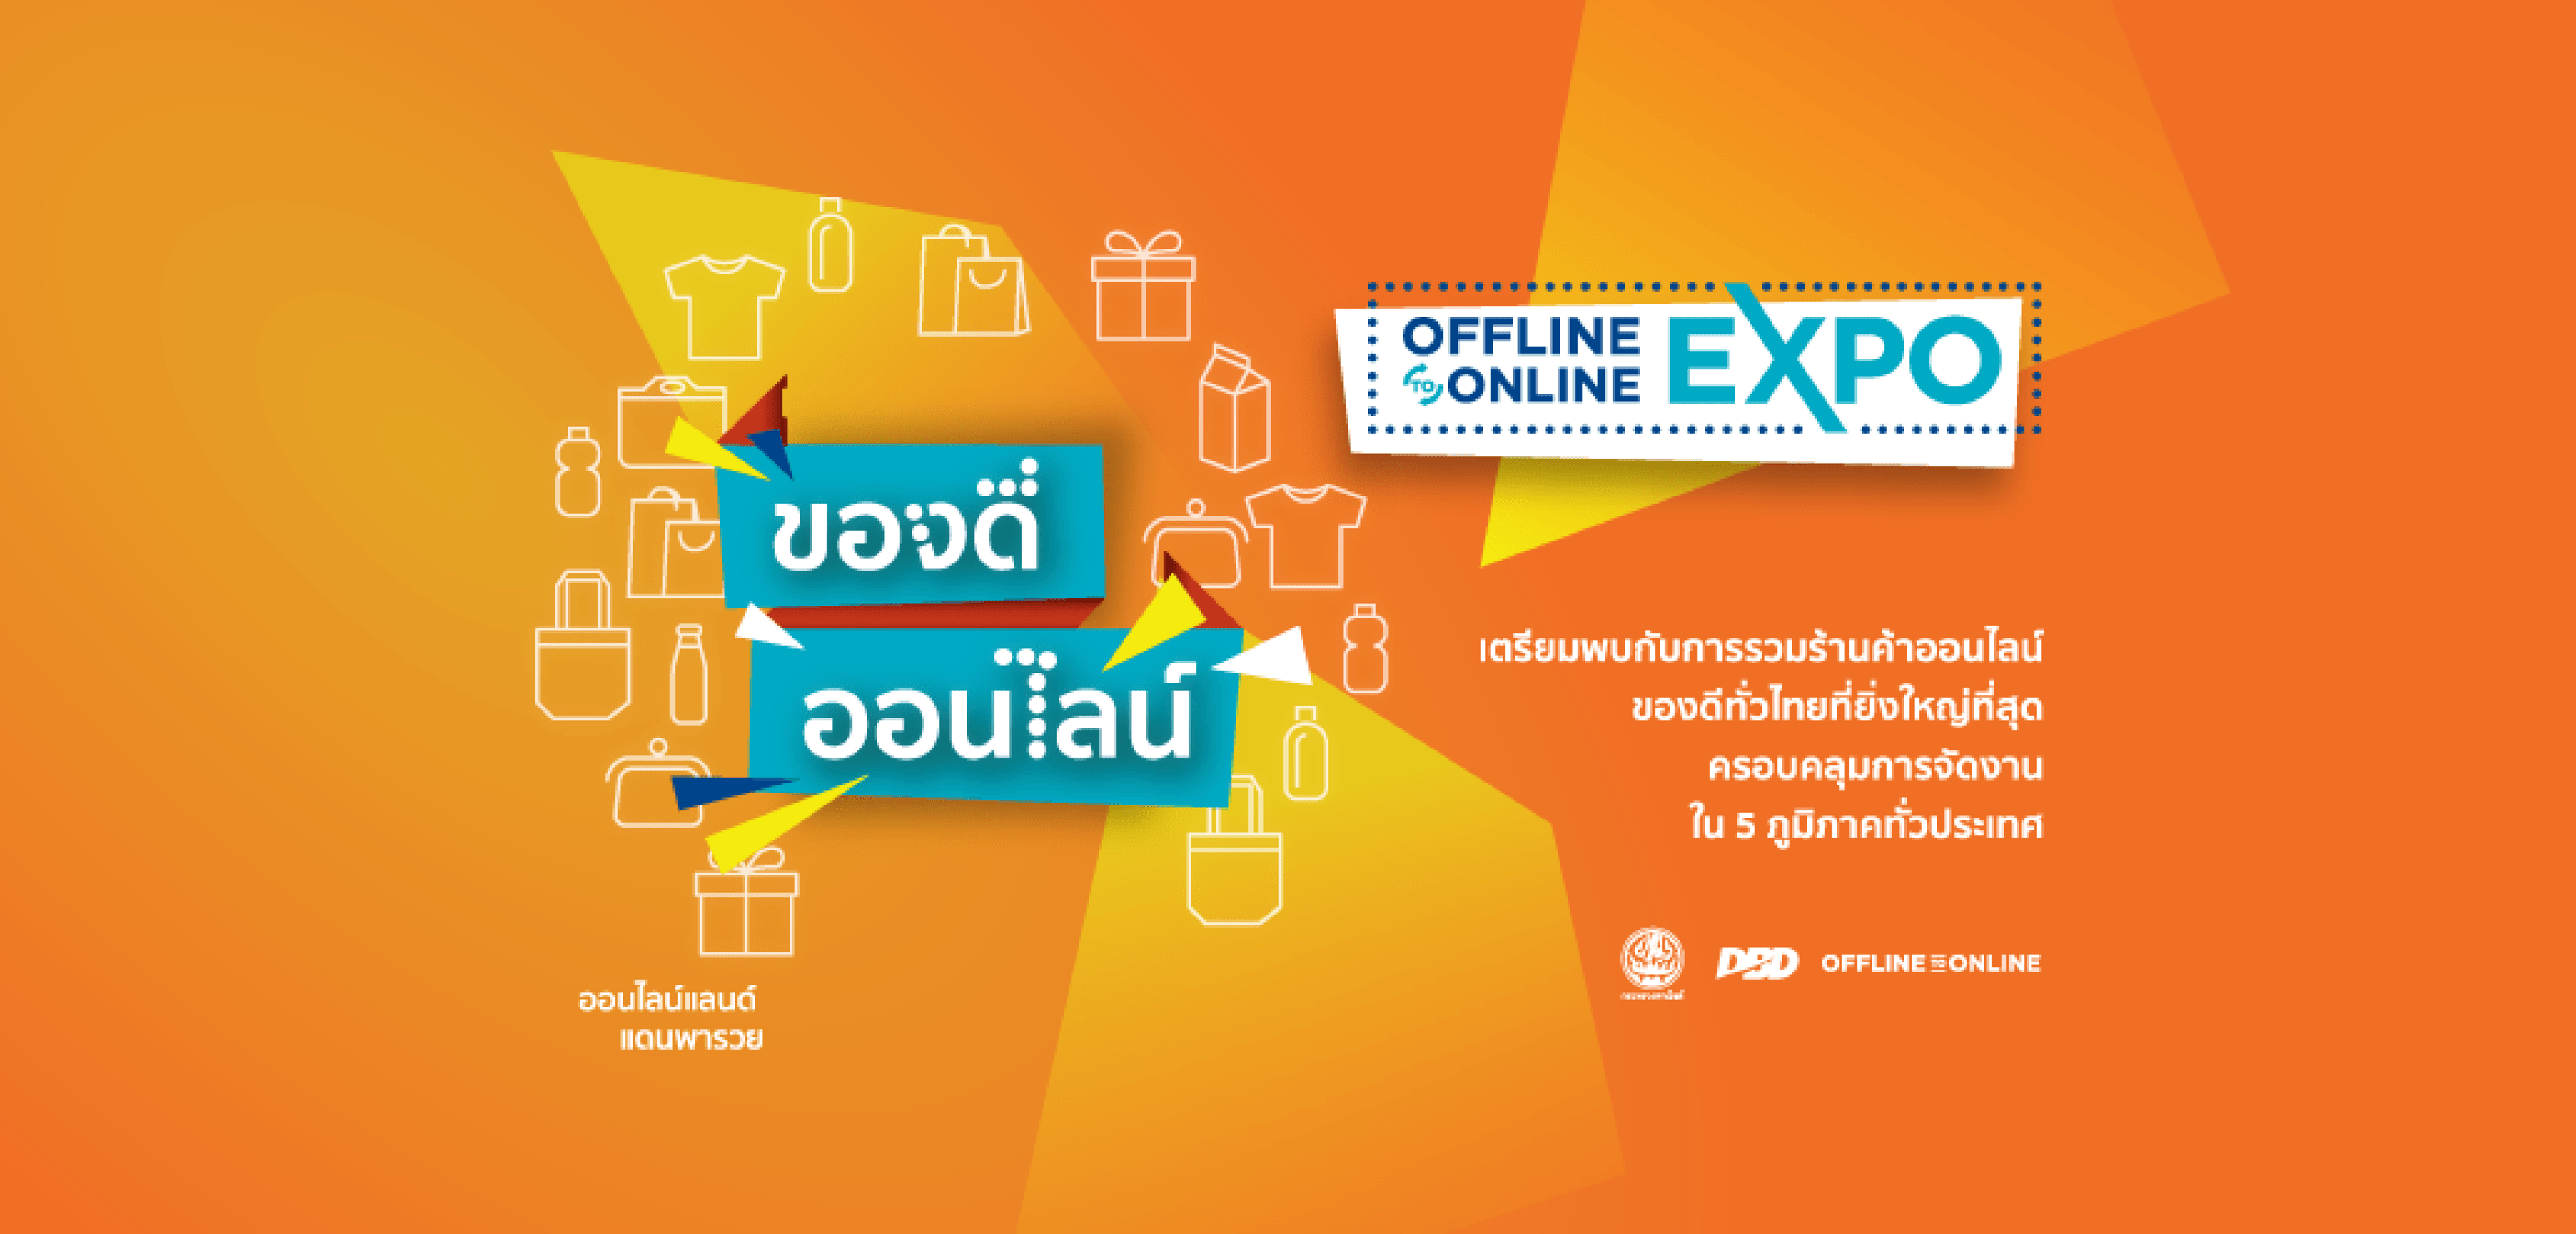 Offline 2 Online Expo